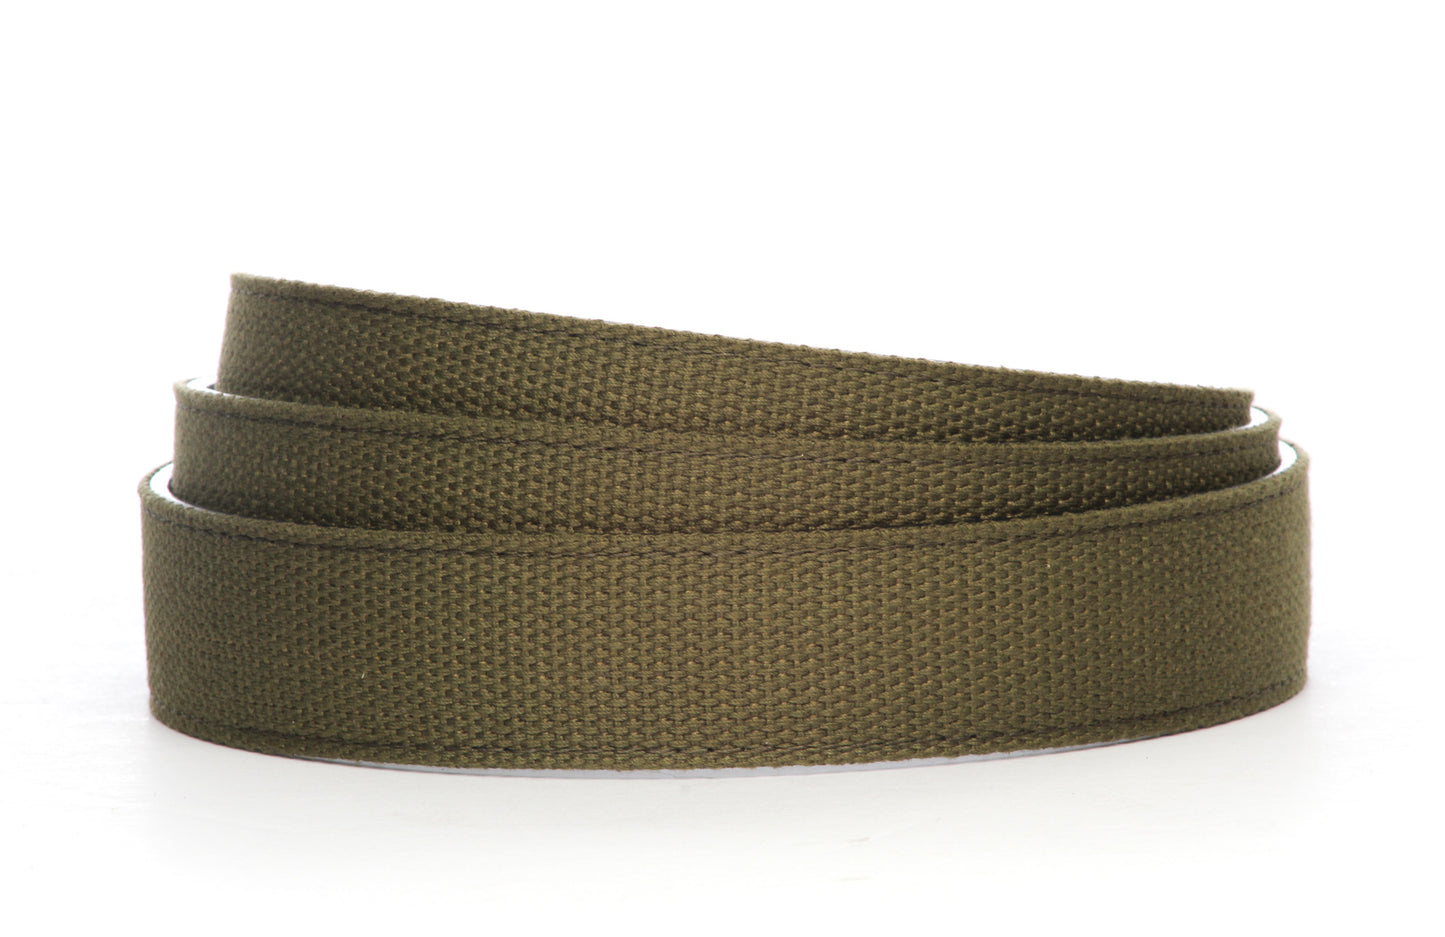 Canvas Belt Strap - Men's Ratchet Belt - Olive Drab, 1.25